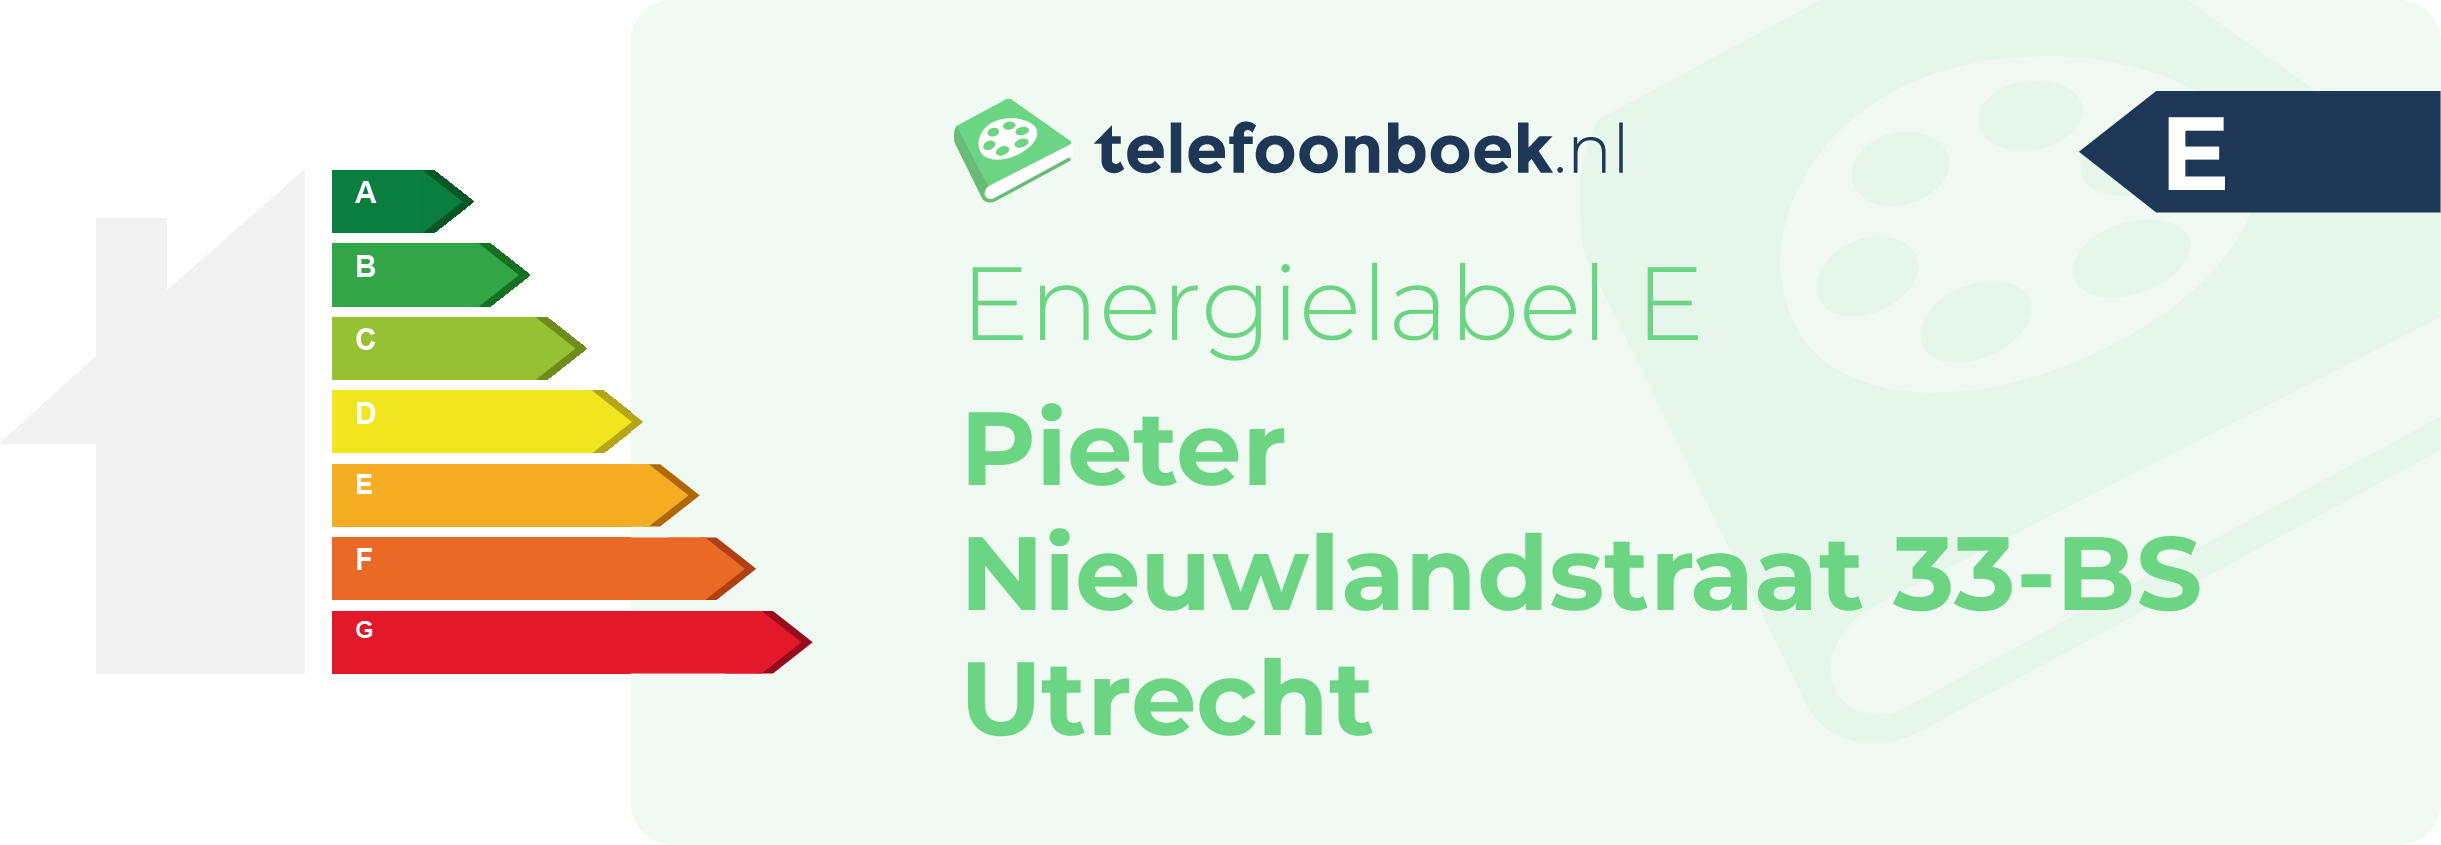 Energielabel Pieter Nieuwlandstraat 33-BS Utrecht